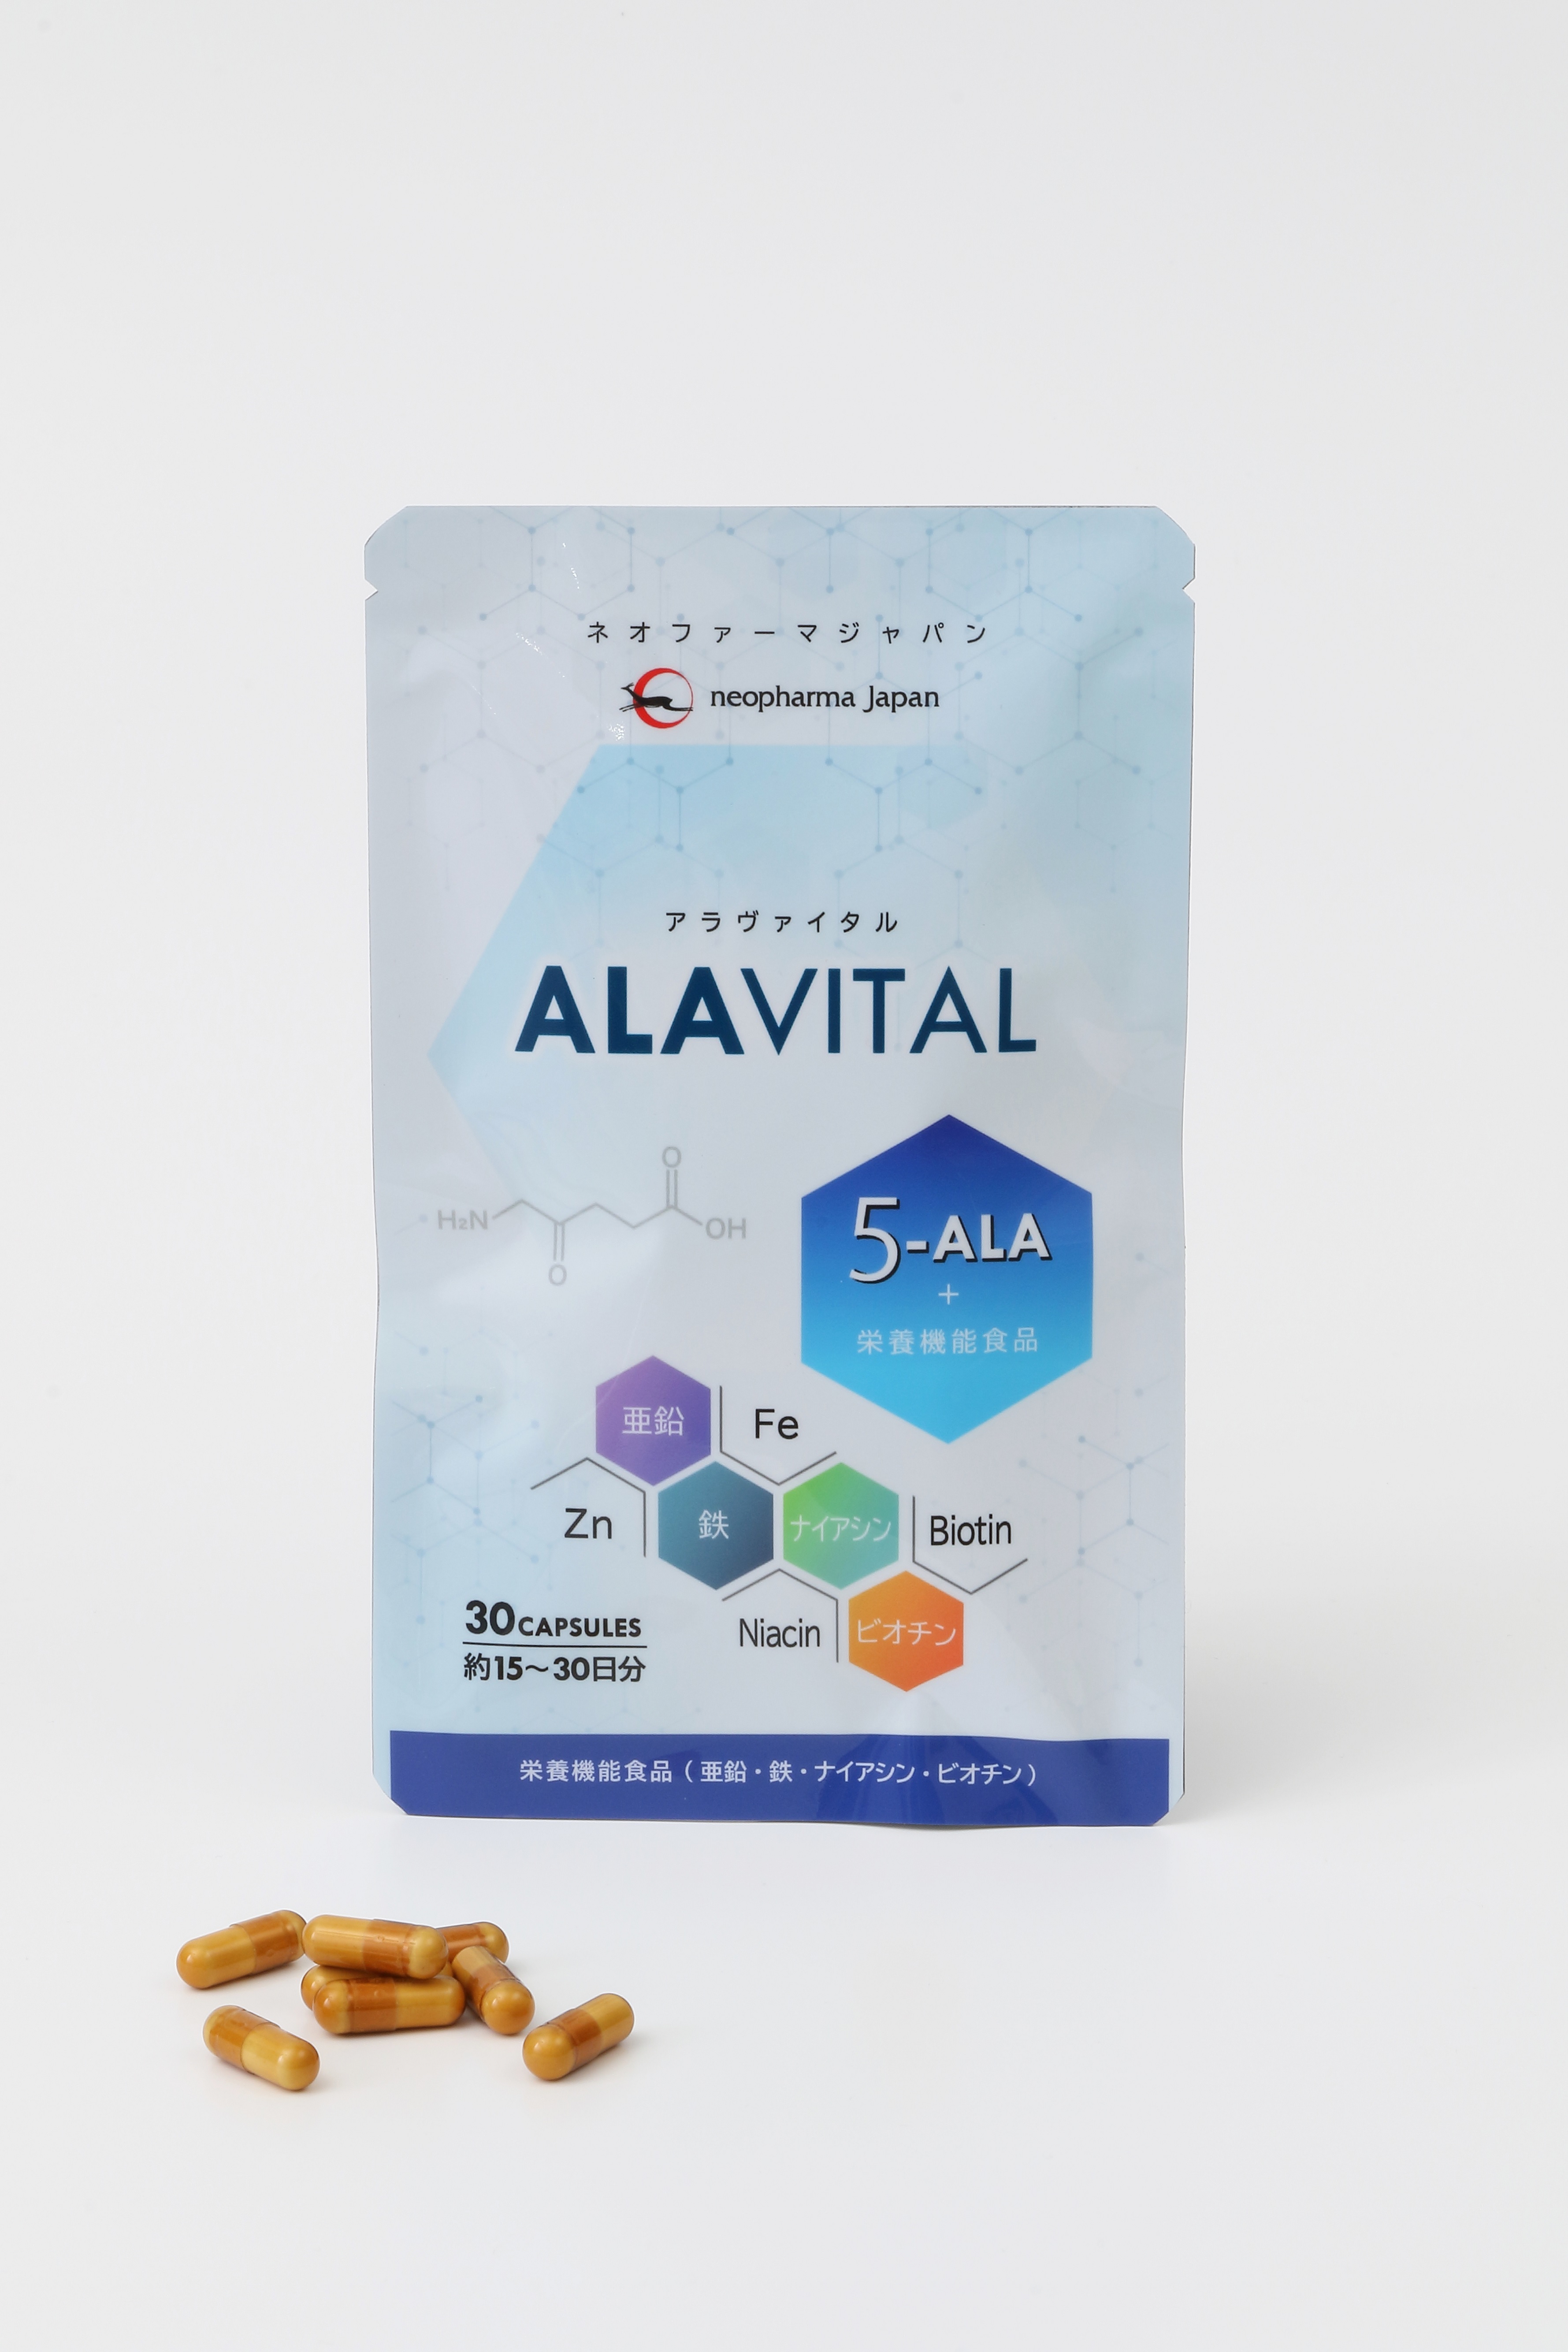 5-アミノレブリン酸配合・新サプリメント
「ALAVITAL(アラヴァイタル)」を発売